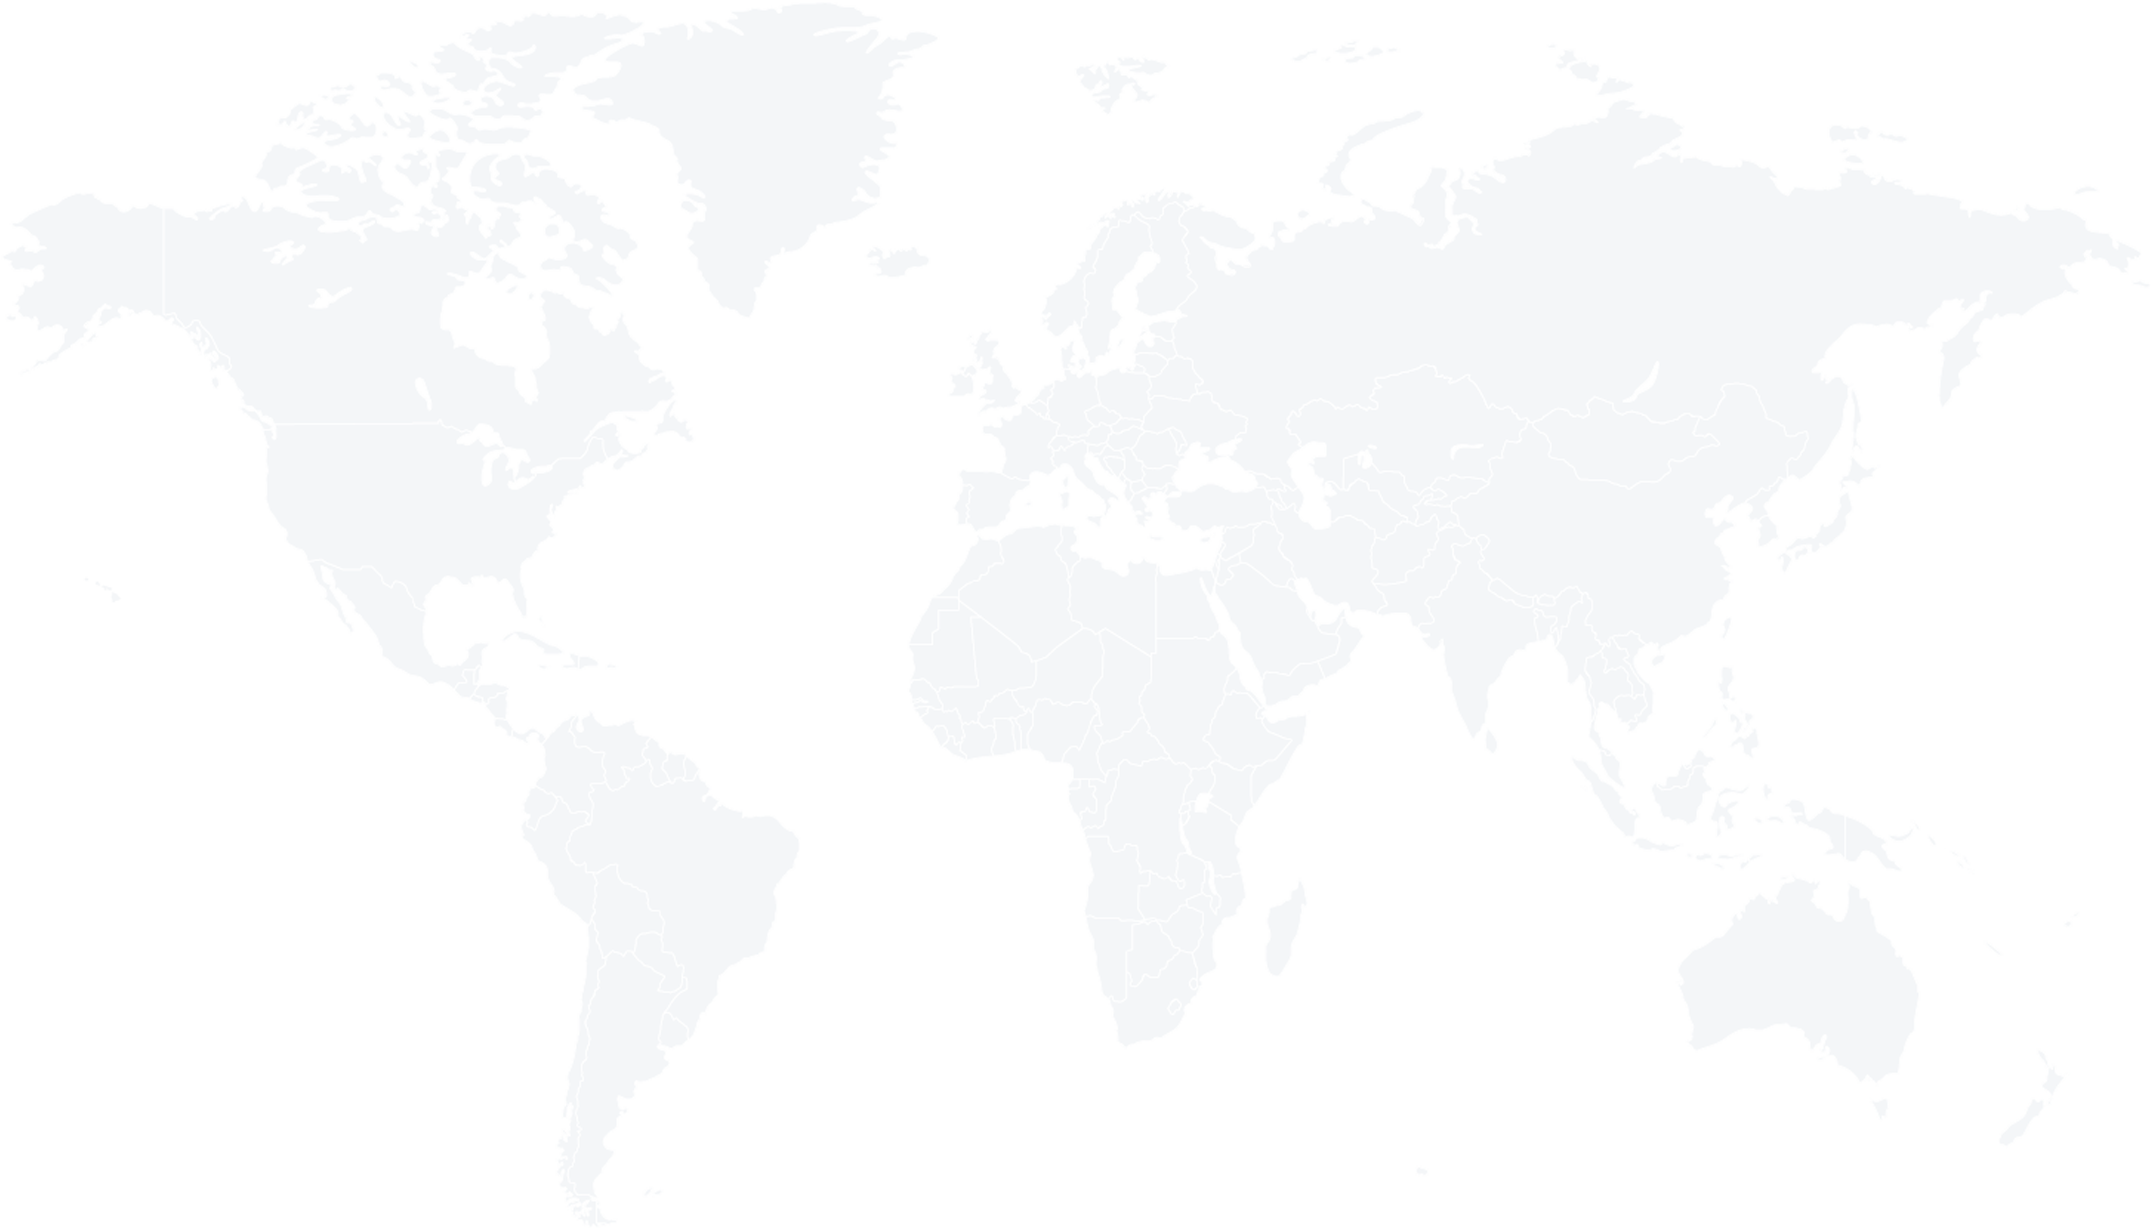 map chikungunya